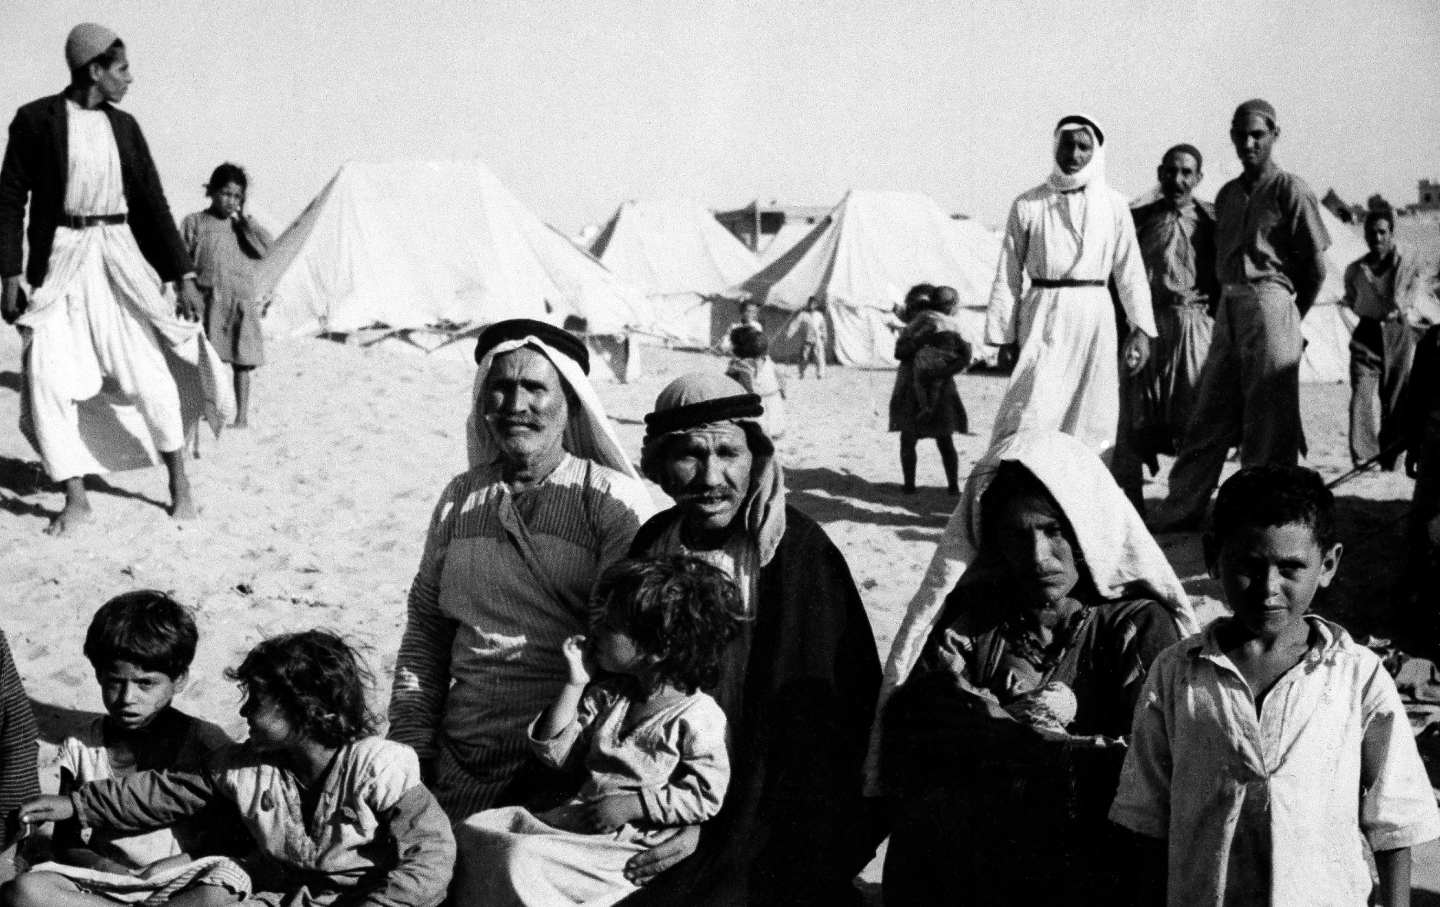 Diese Familie besaß eine eigene Farm in der Nähe von Haifa.  Sie flohen, als das britische Mandat endete und es sicher wurde, dass Israel die Stadt kontrollieren würde.  Heute sind sie Flüchtlinge in einem Lager in der Nähe von Gaza.  Der einzige Besitz, den sie noch haben, ist eine gepolsterte Decke.